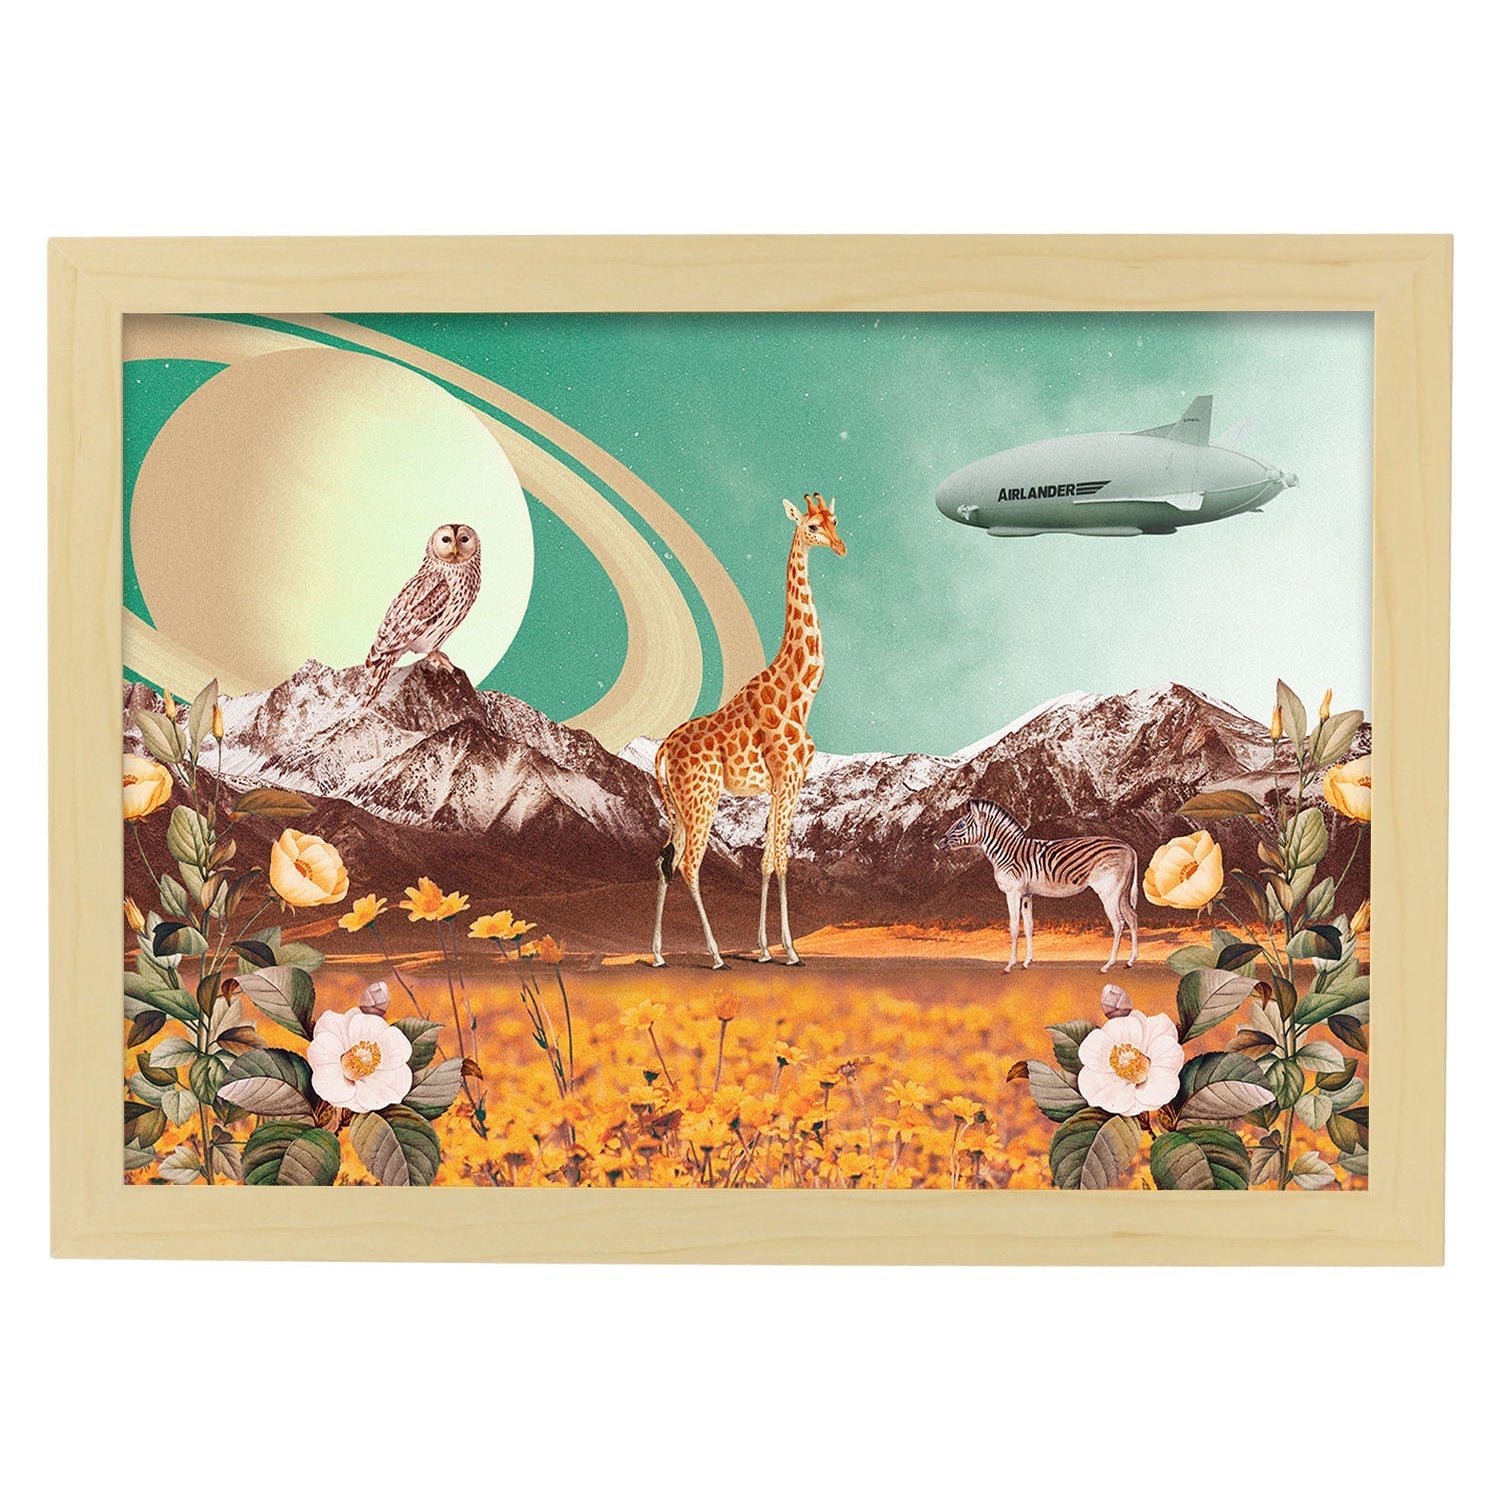 Lamina artistica decorativa con ilustración de Saturn estilo Collage-Artwork-Nacnic-A4-Marco Madera clara-Nacnic Estudio SL